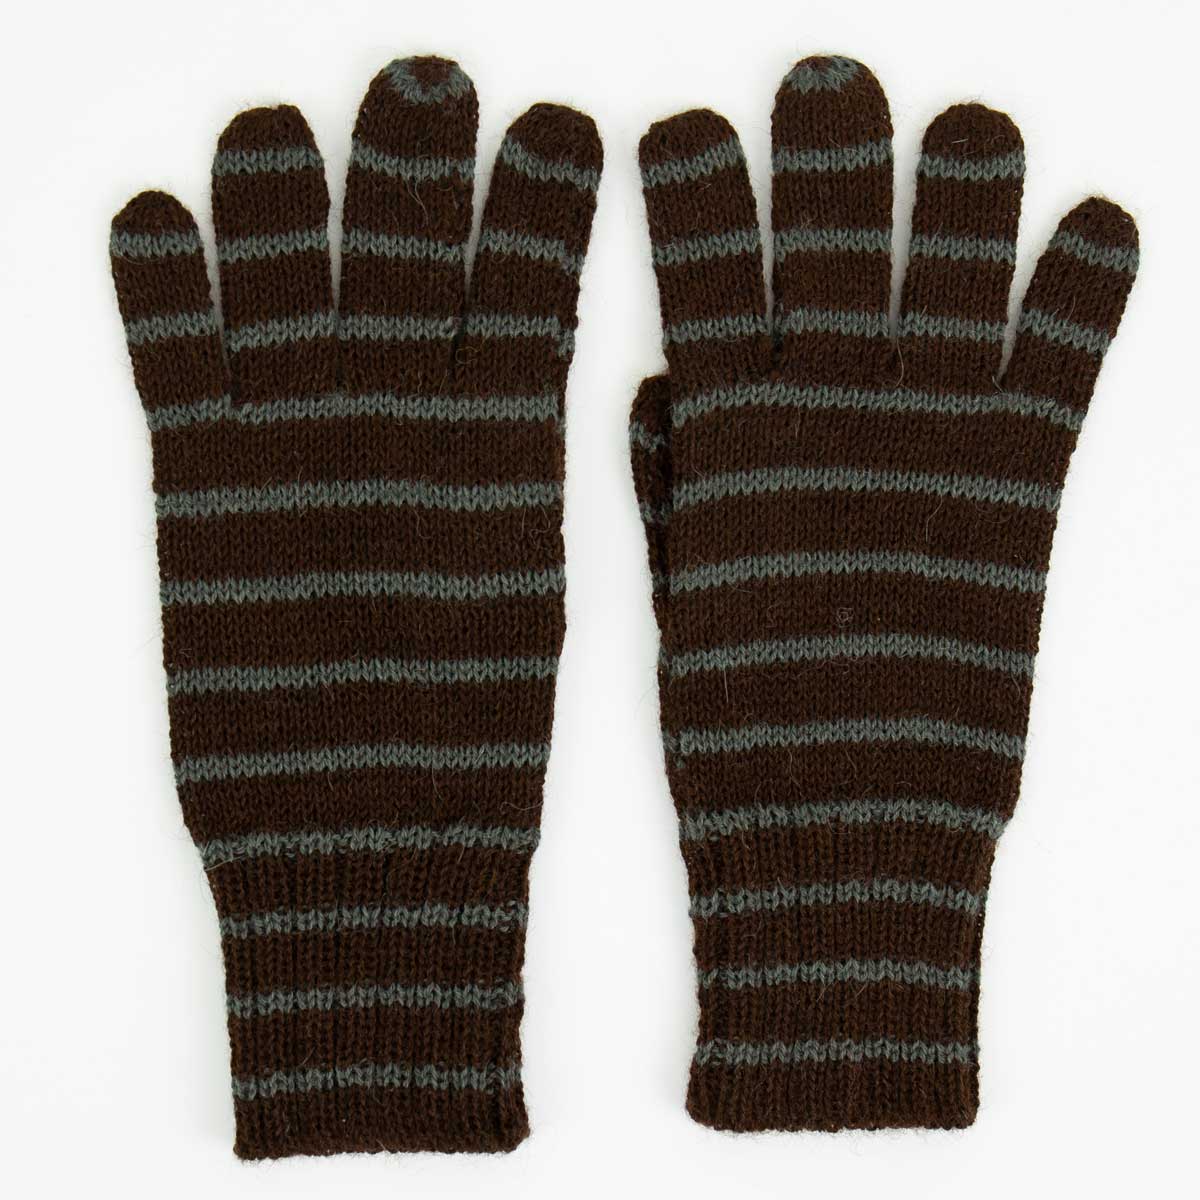 ALPACKA/23 Gloves, brown/grey